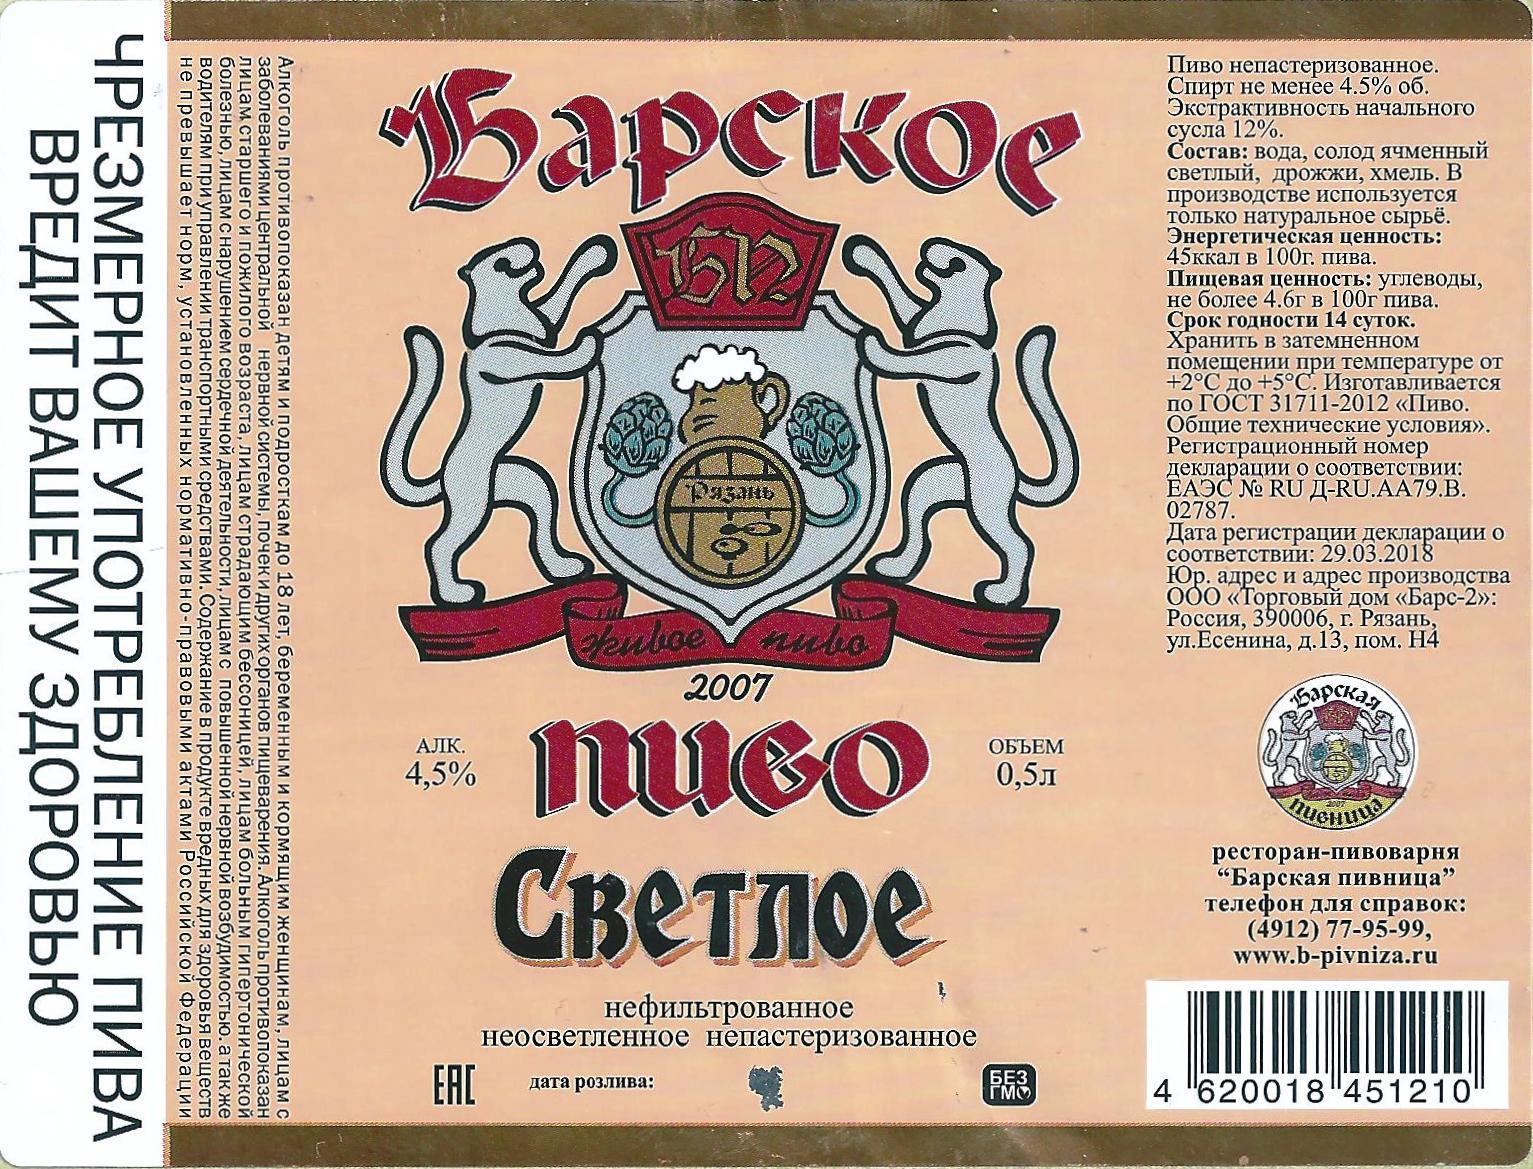 ставропольское пиво фото